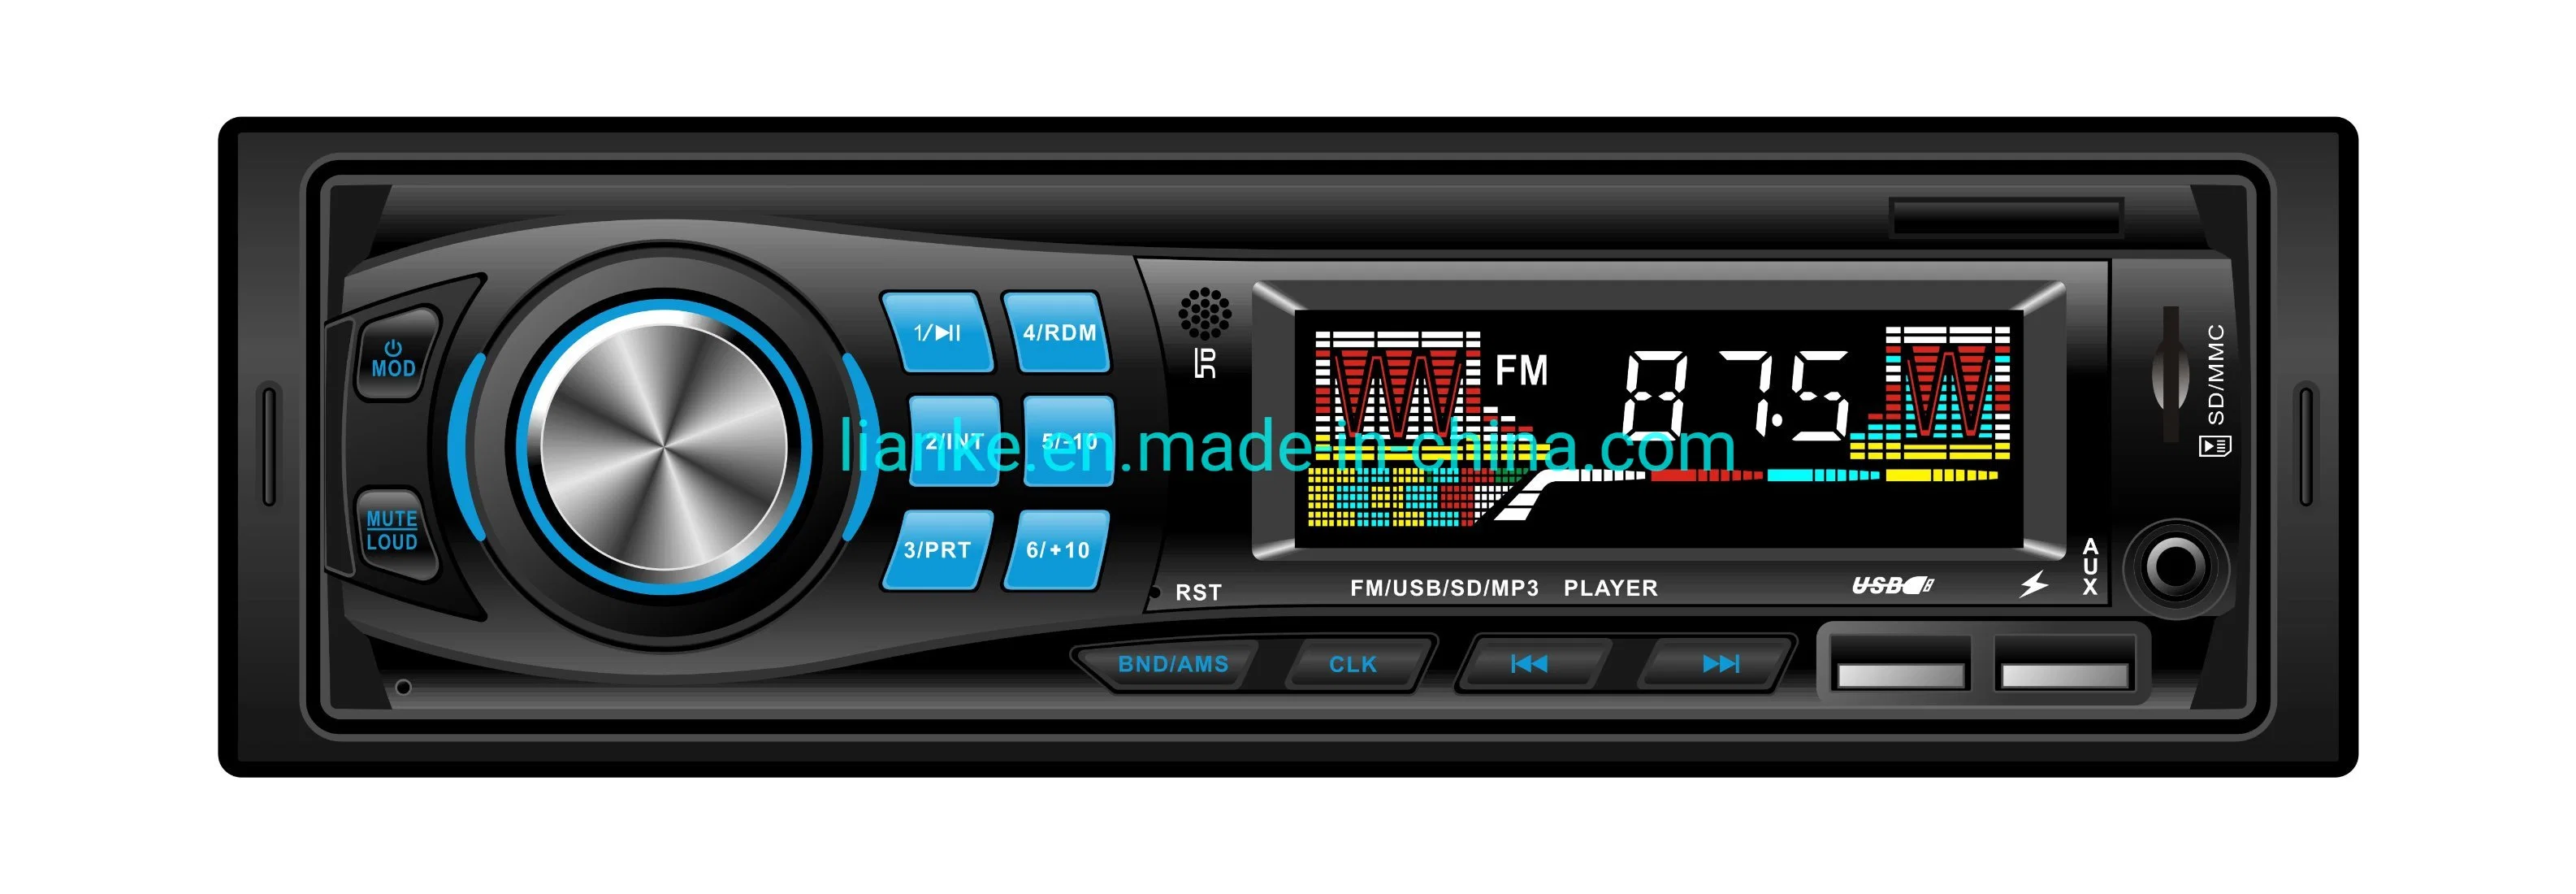 Lecteur multimédia audio MP3 de voiture avec USB/FM